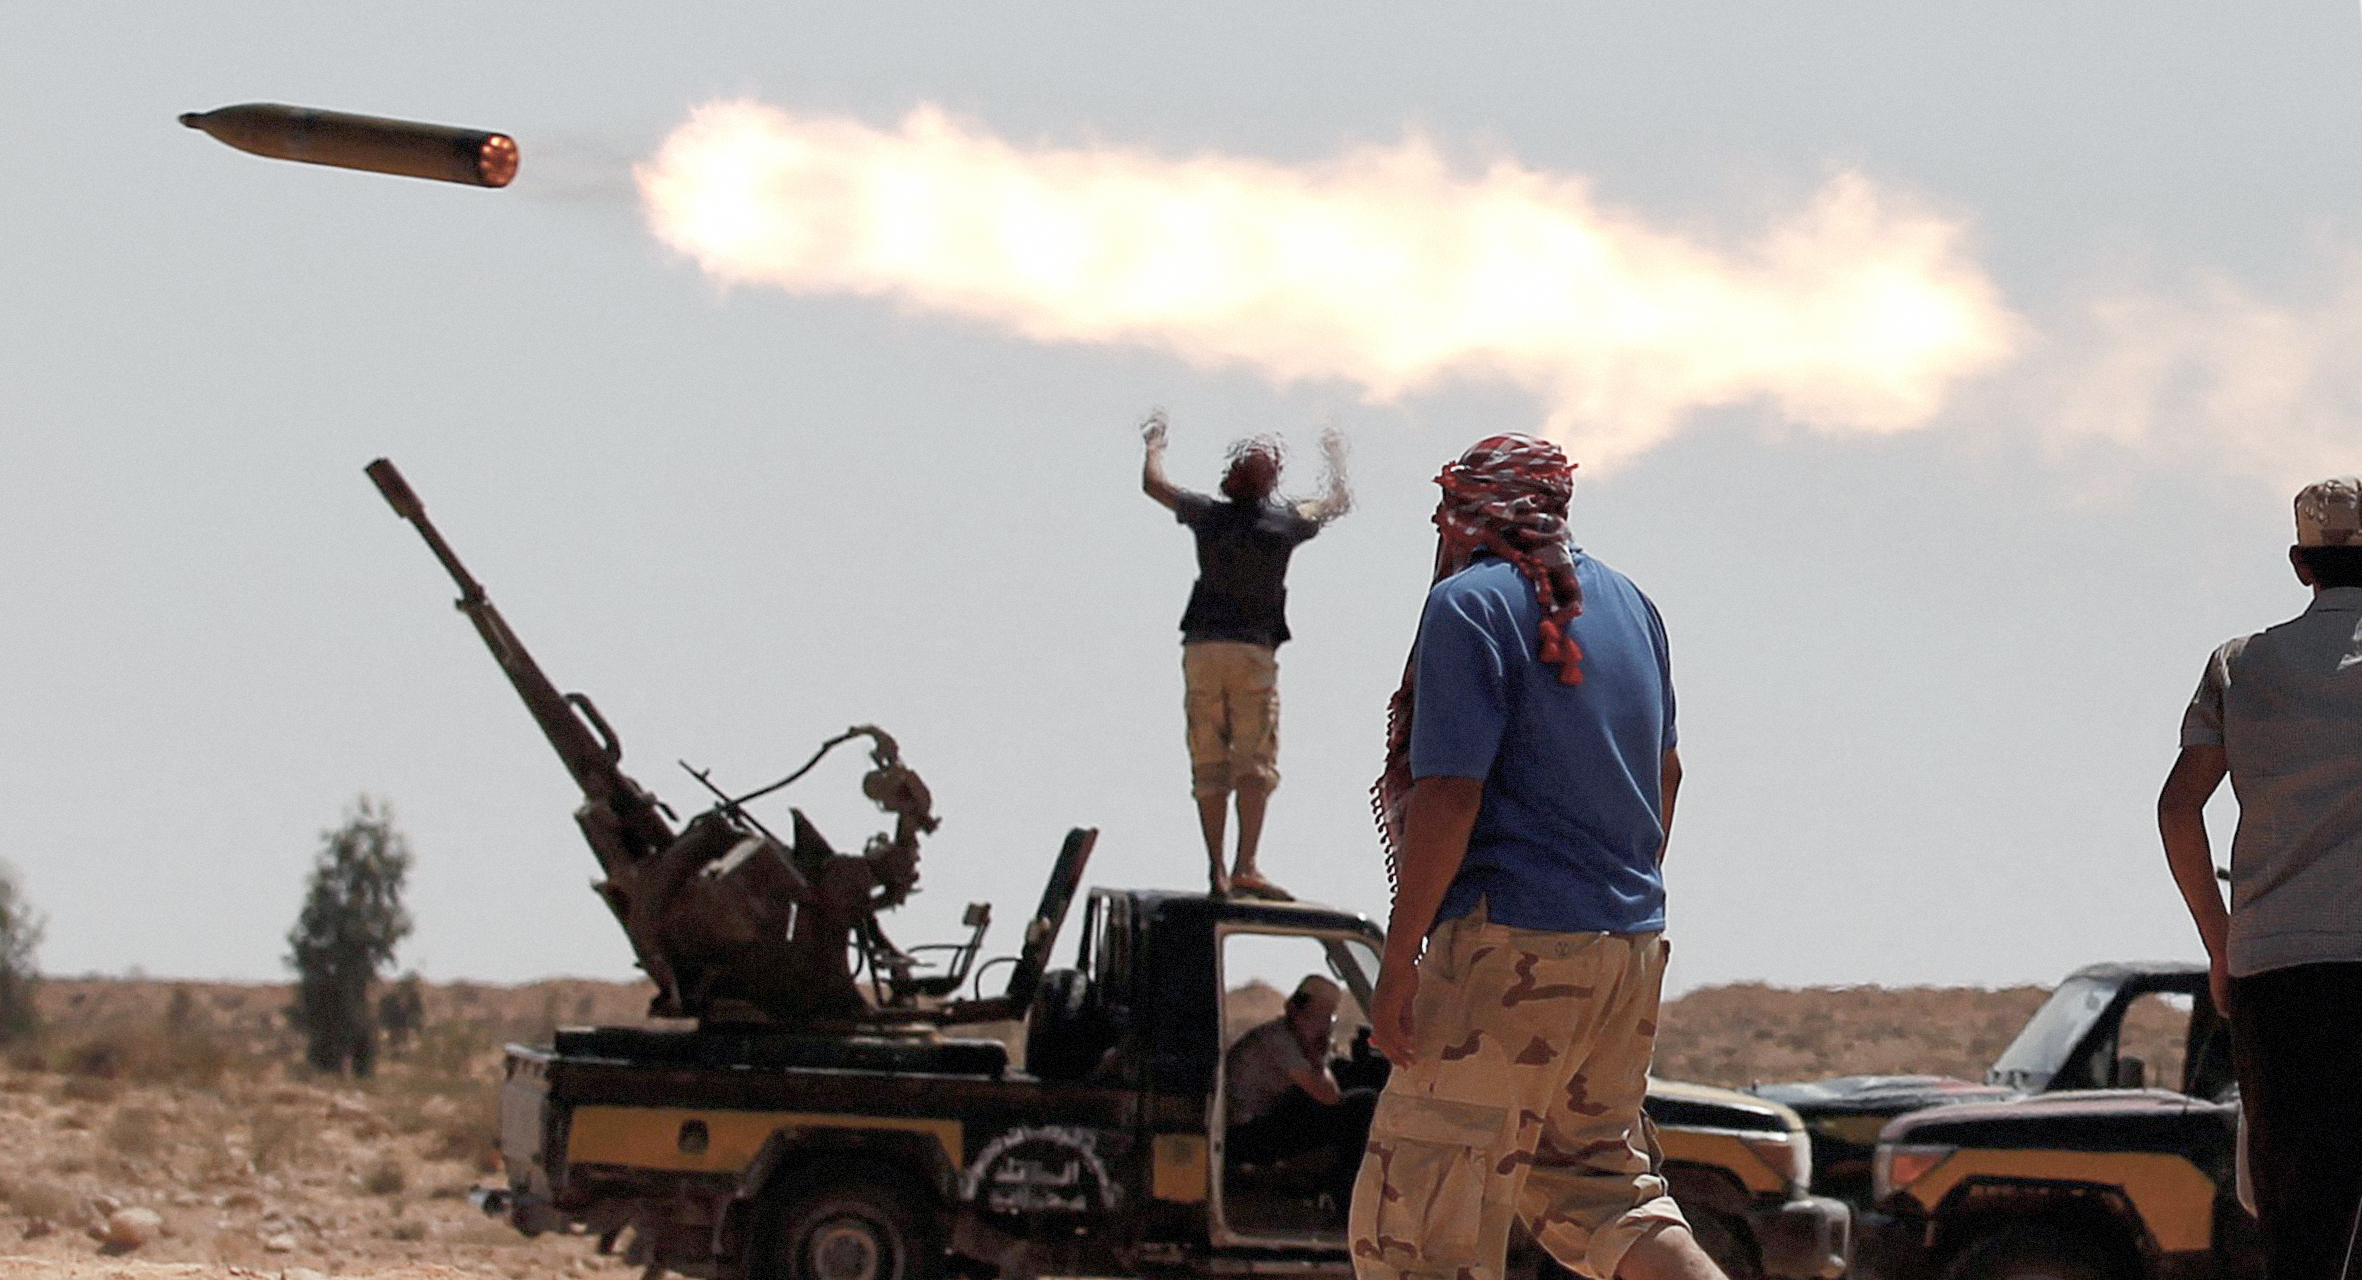 صورة استمرار تبادل إطلاق النار احتفالاً بوقف إطلاق النار في ليبيا